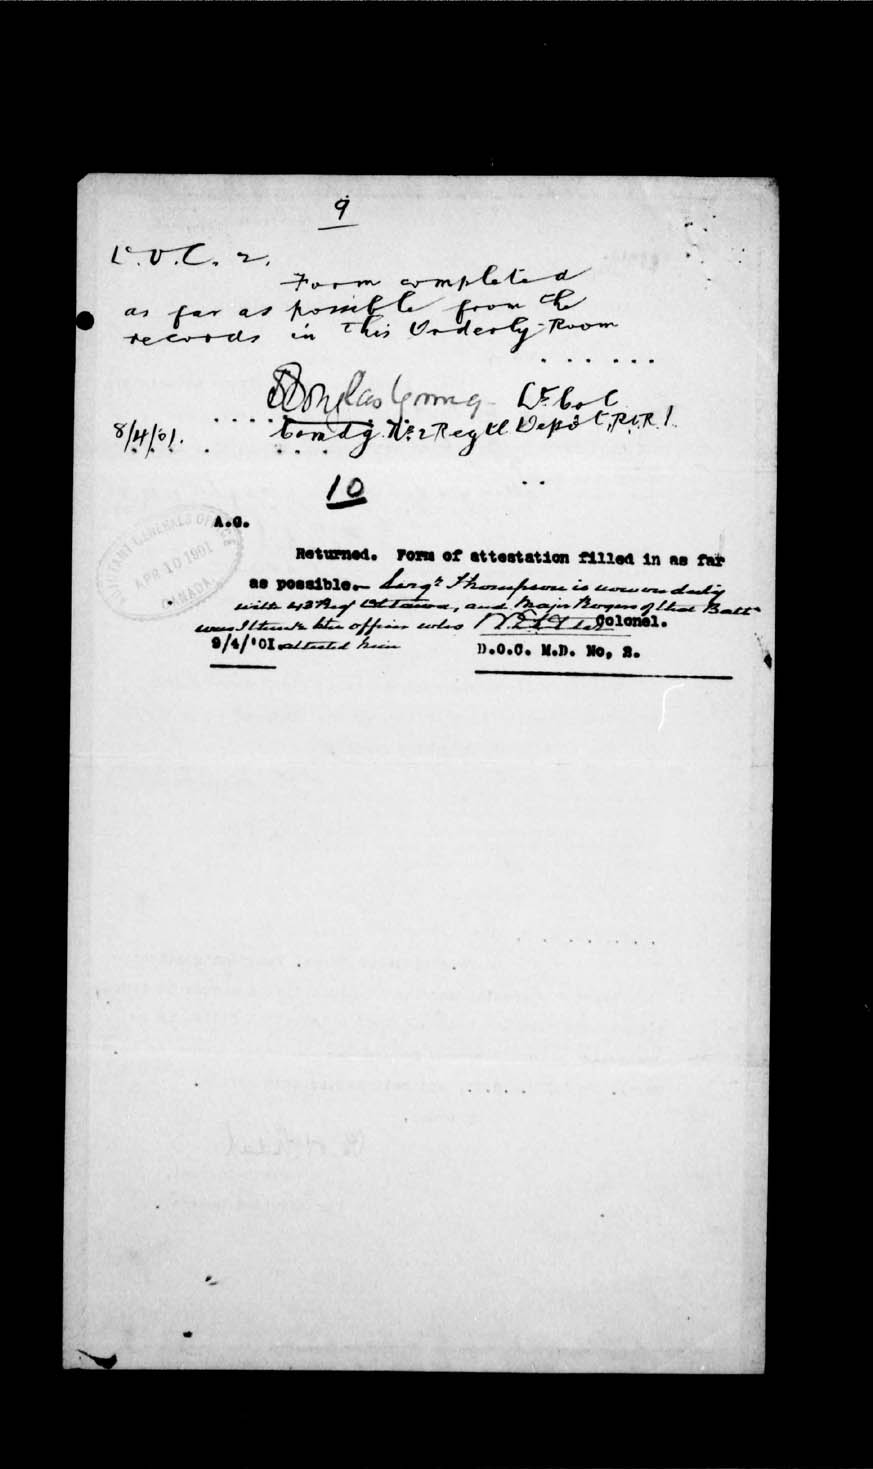 Page numérisé de Boer War pour l'image numéro: e002204735